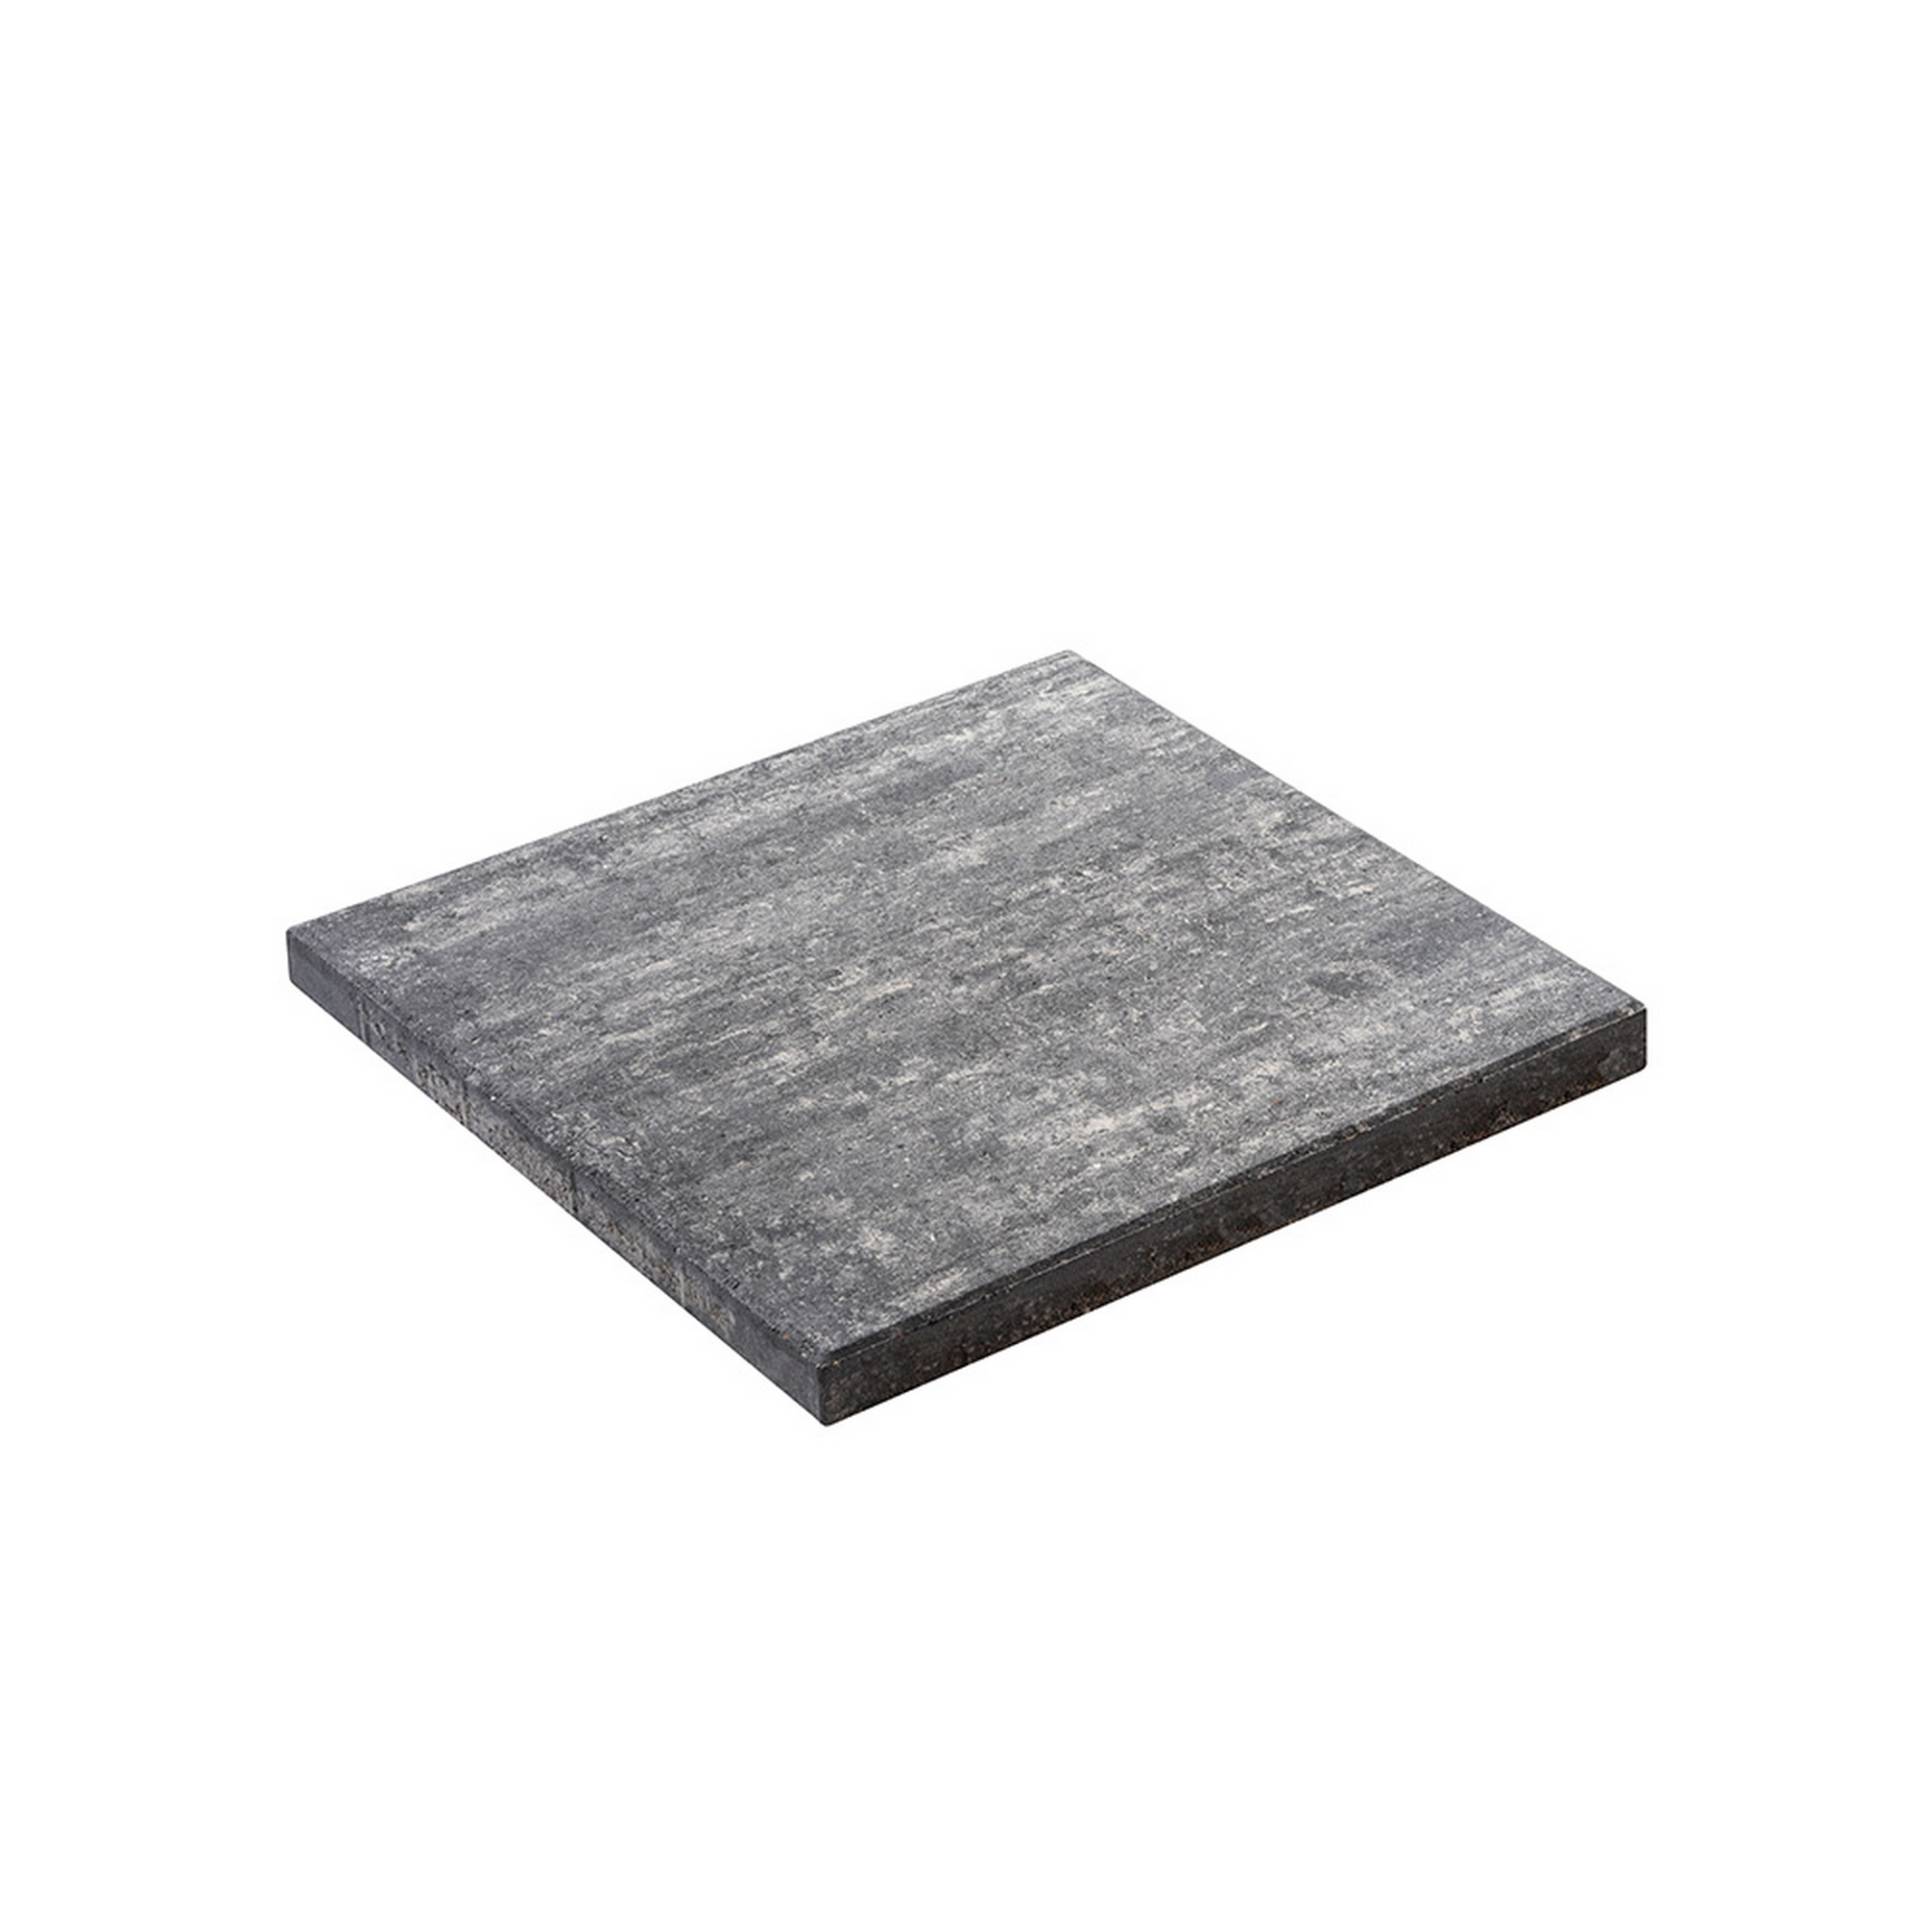 Diephaus Terrassenplatte 'T-Court Live' Beton grau/schwarz 40 x 40 x 4 cm von Diephaus